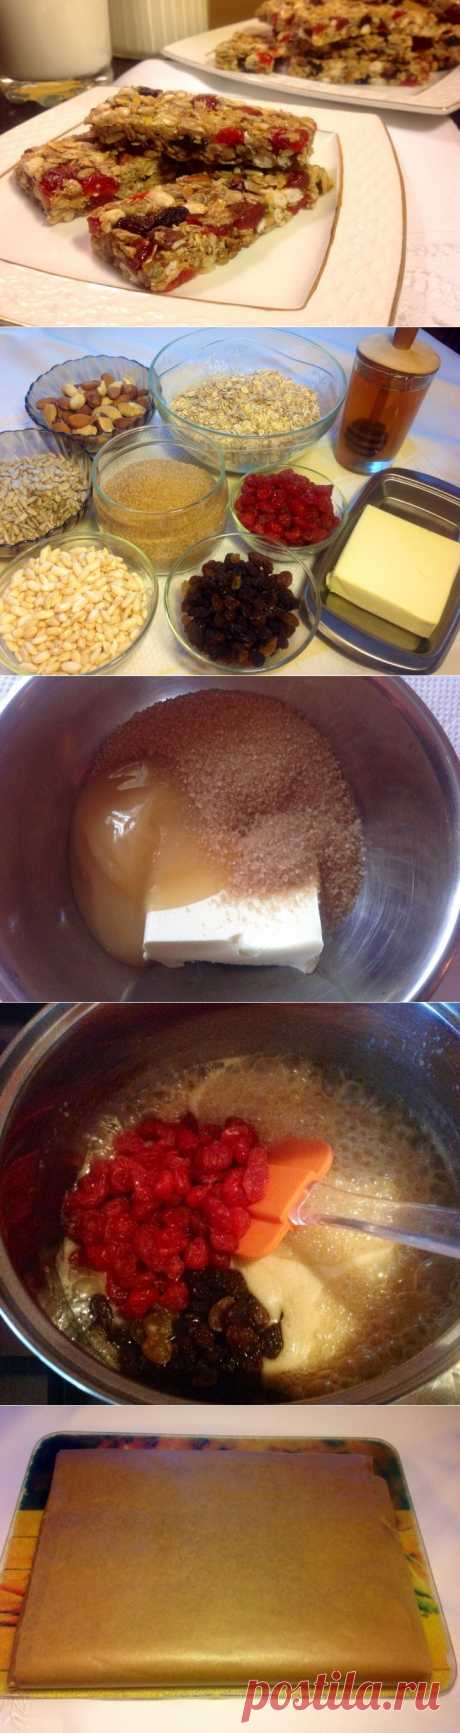 Гранола - пошаговый рецепт с фото - как приготовить - ингредиенты, состав, время приготовления - Леди Mail.Ru